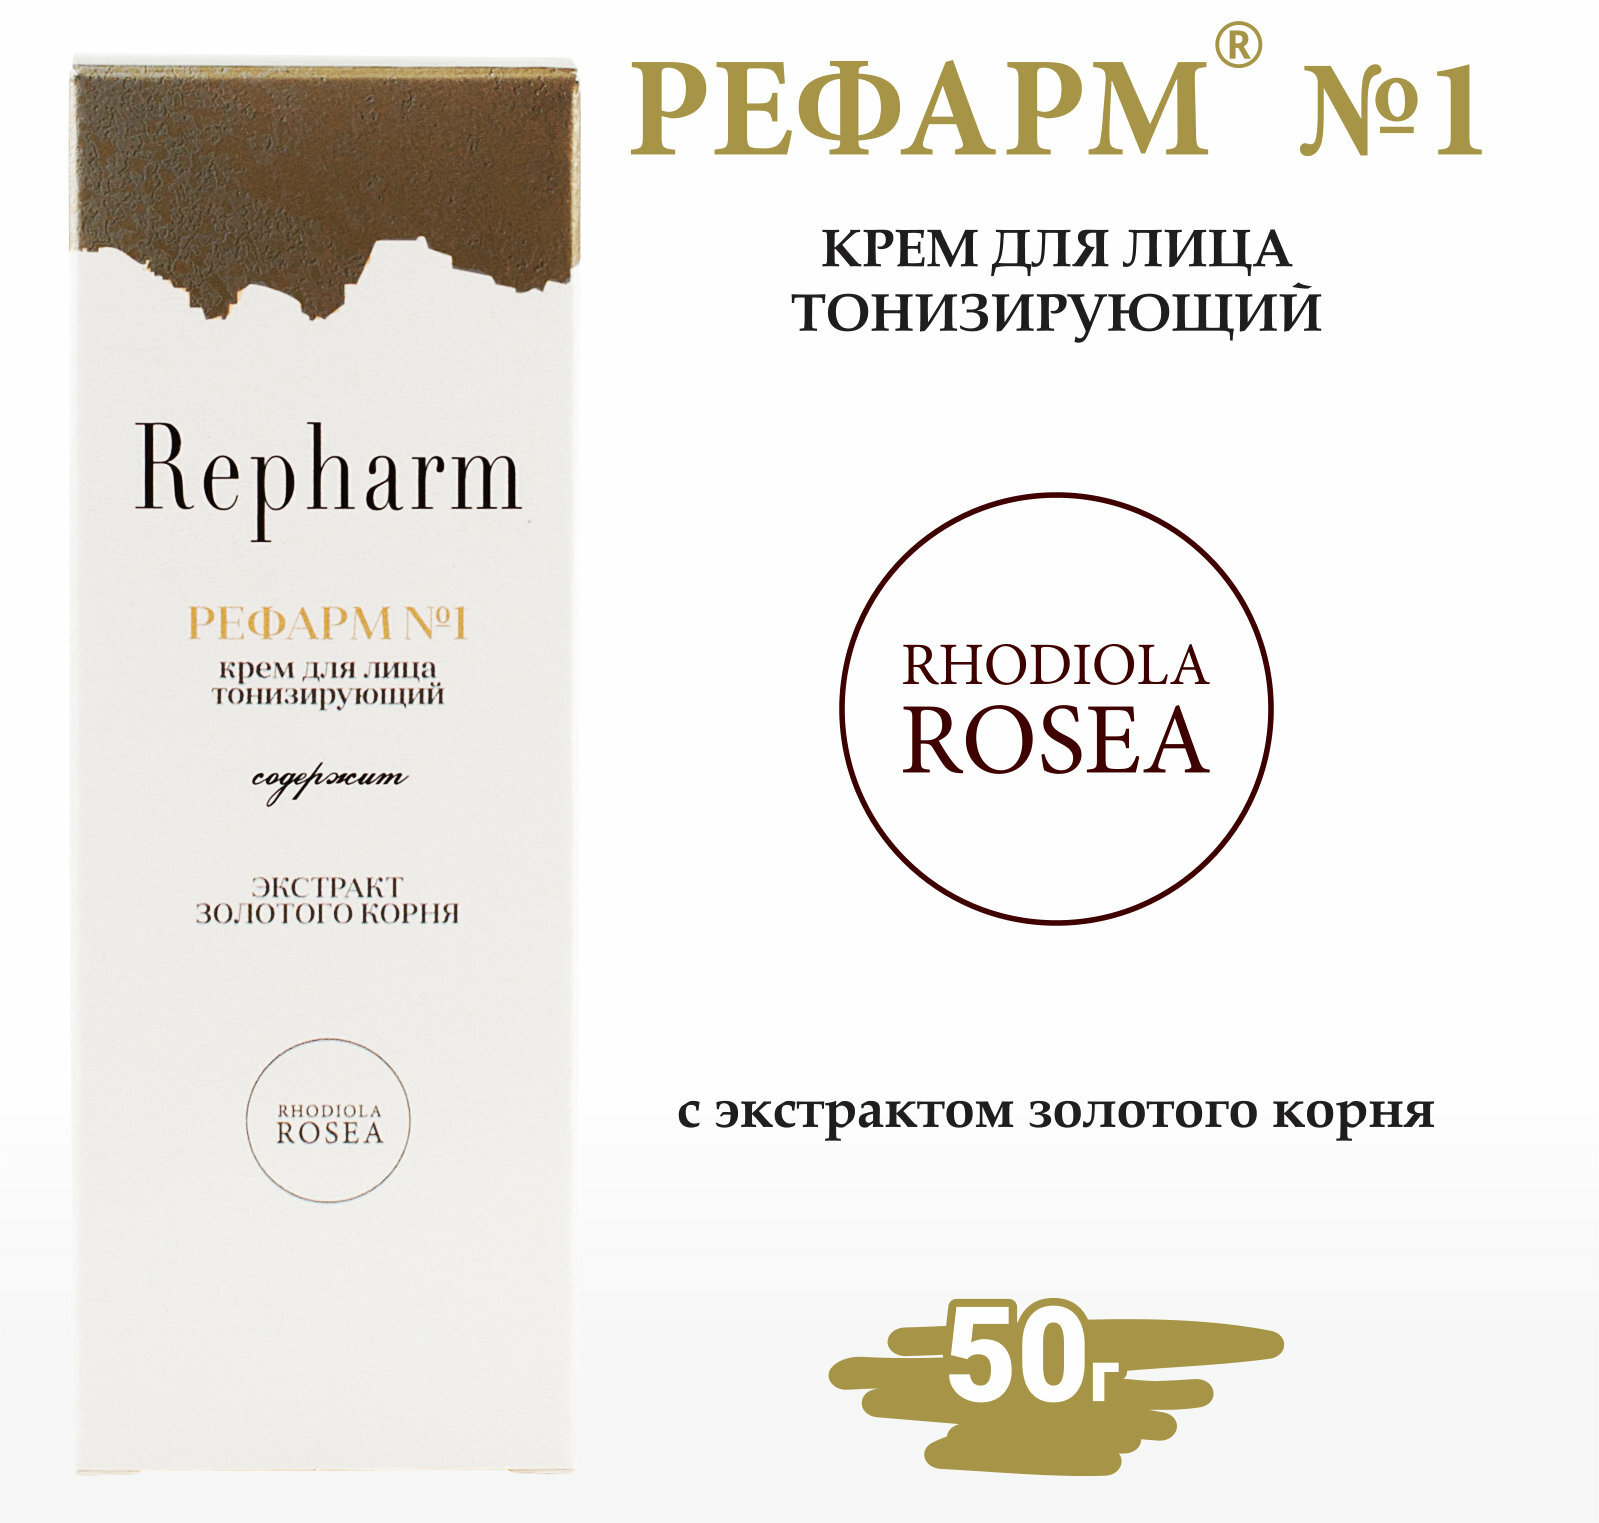 Крем для лица Repharm тонизирующий «рефарм №1» 50 мл